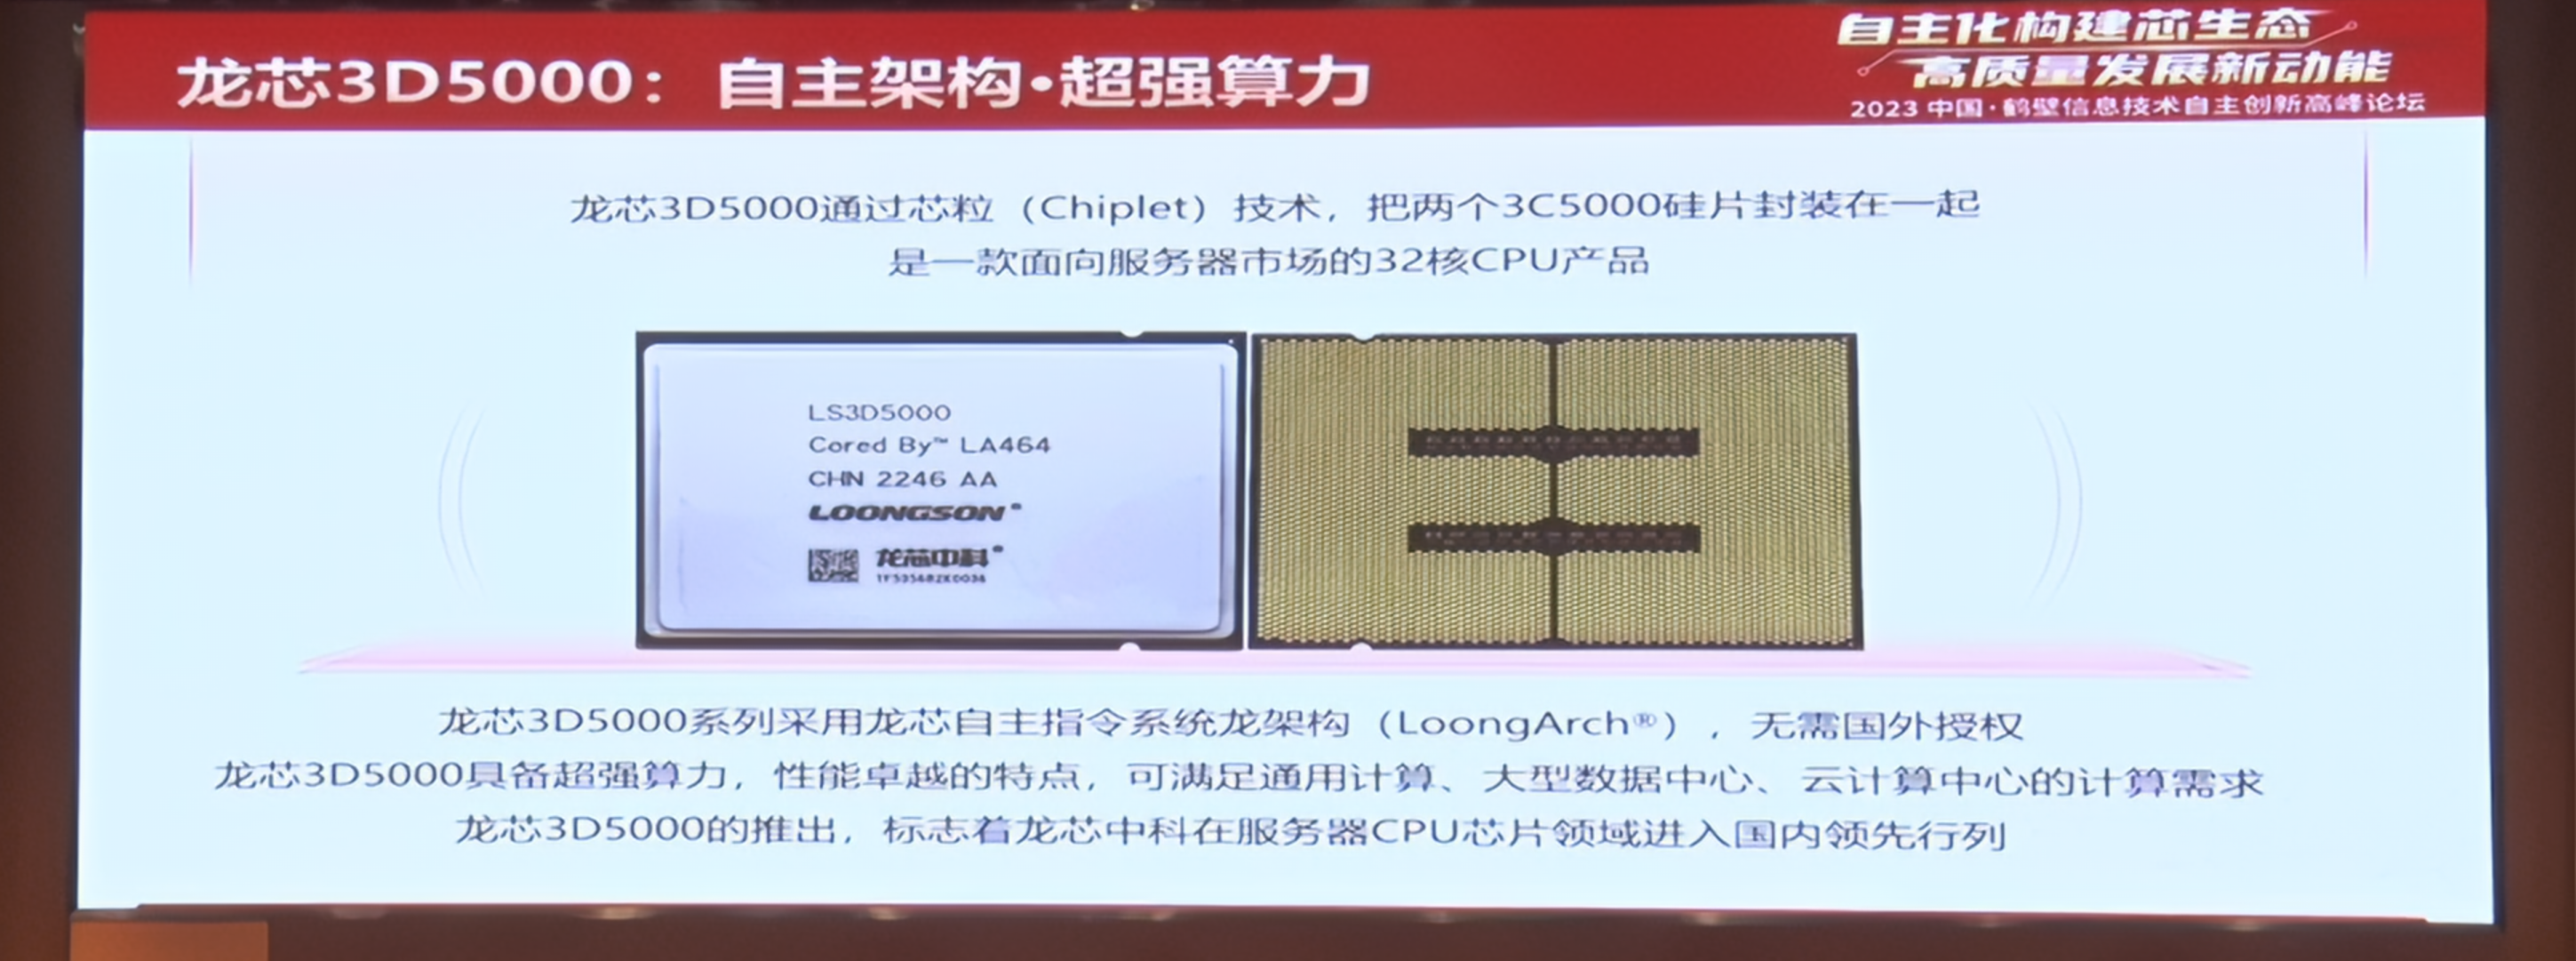 Loongson 3D5000: архитектура и возможности 32-ядерного серверного процессора из Китая - 3